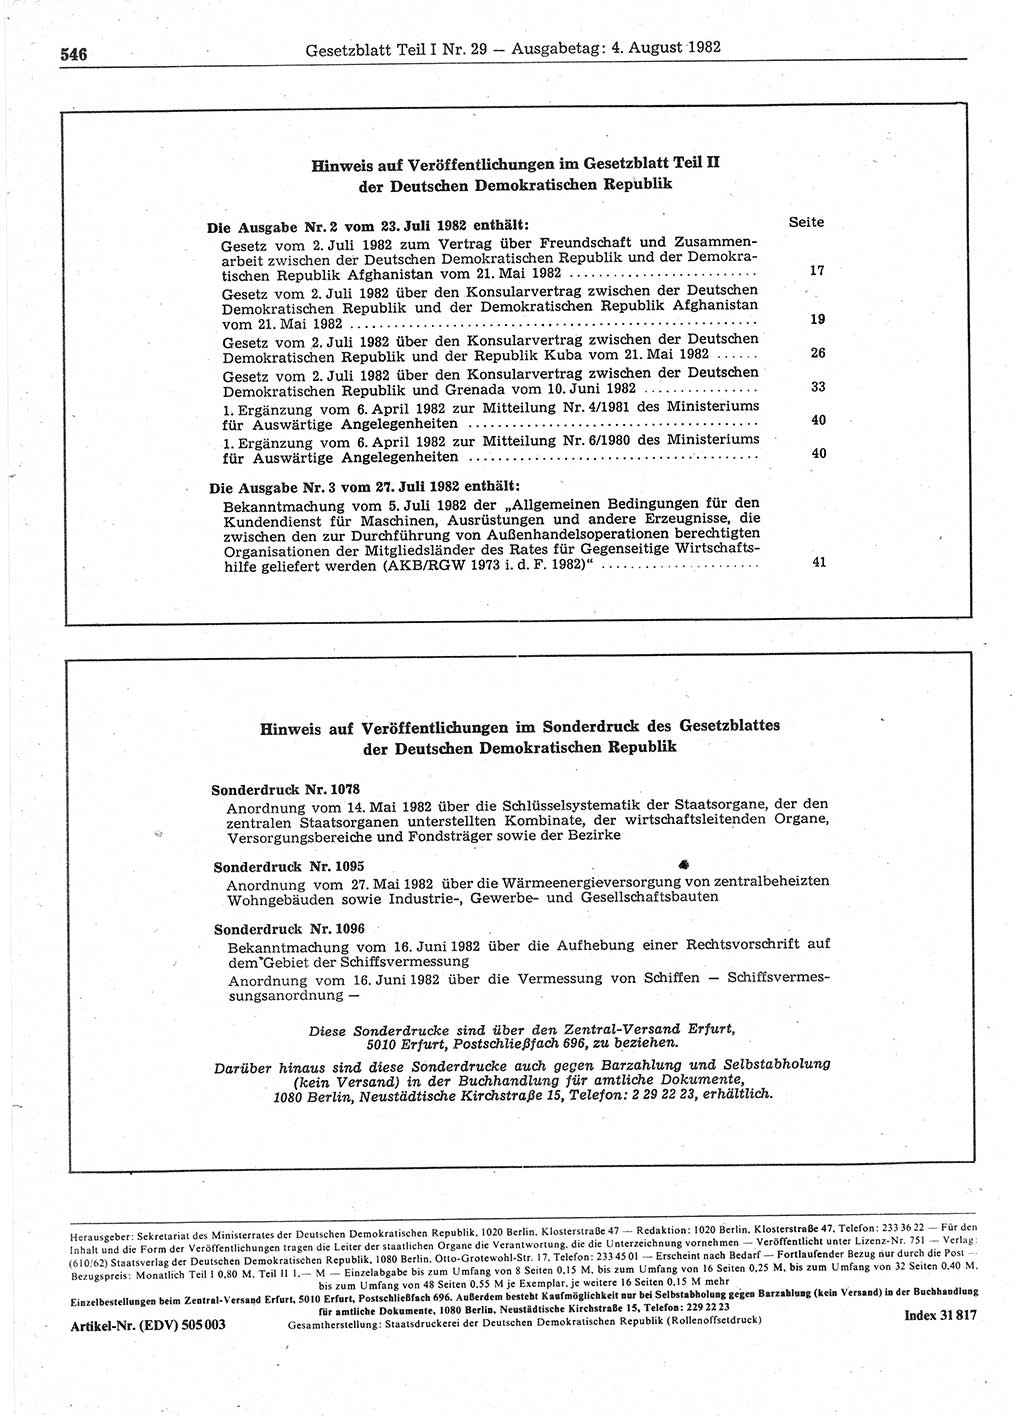 Gesetzblatt (GBl.) der Deutschen Demokratischen Republik (DDR) Teil Ⅰ 1982, Seite 546 (GBl. DDR Ⅰ 1982, S. 546)